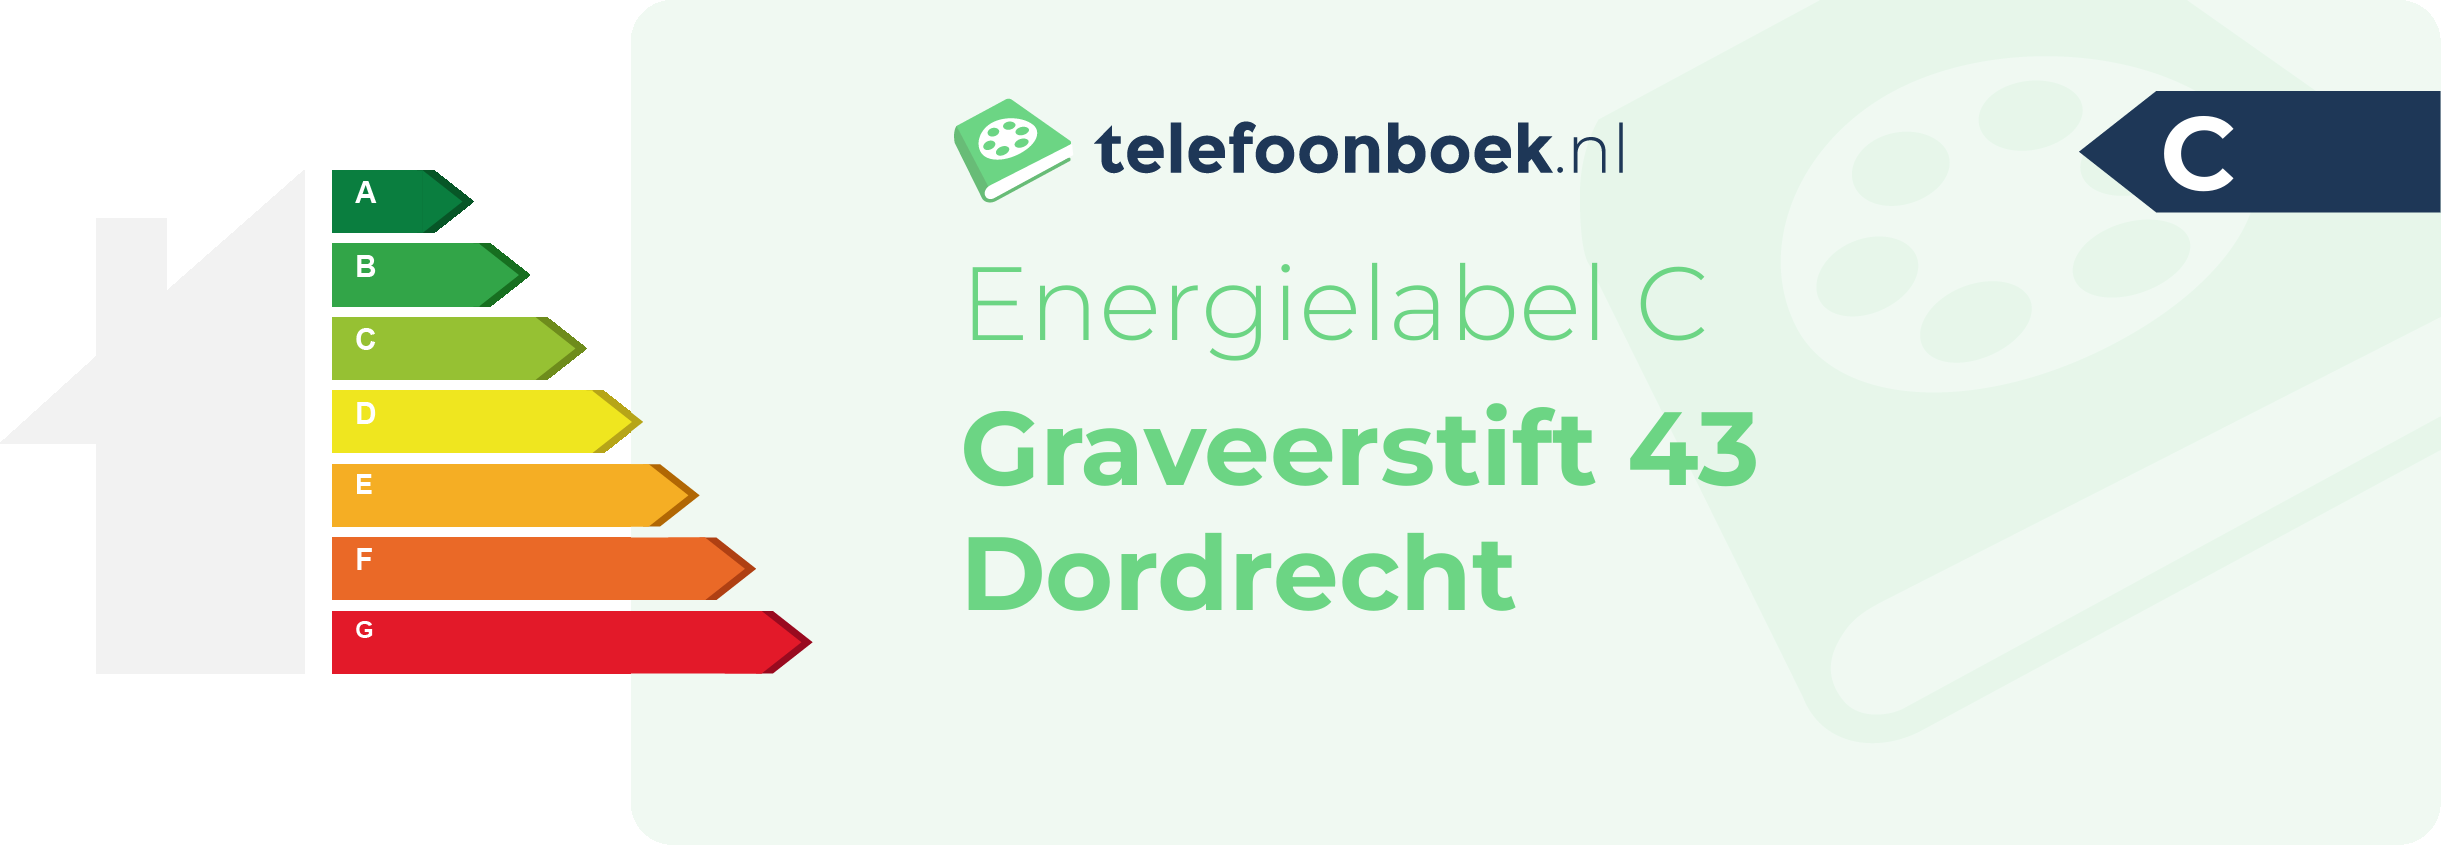 Energielabel Graveerstift 43 Dordrecht